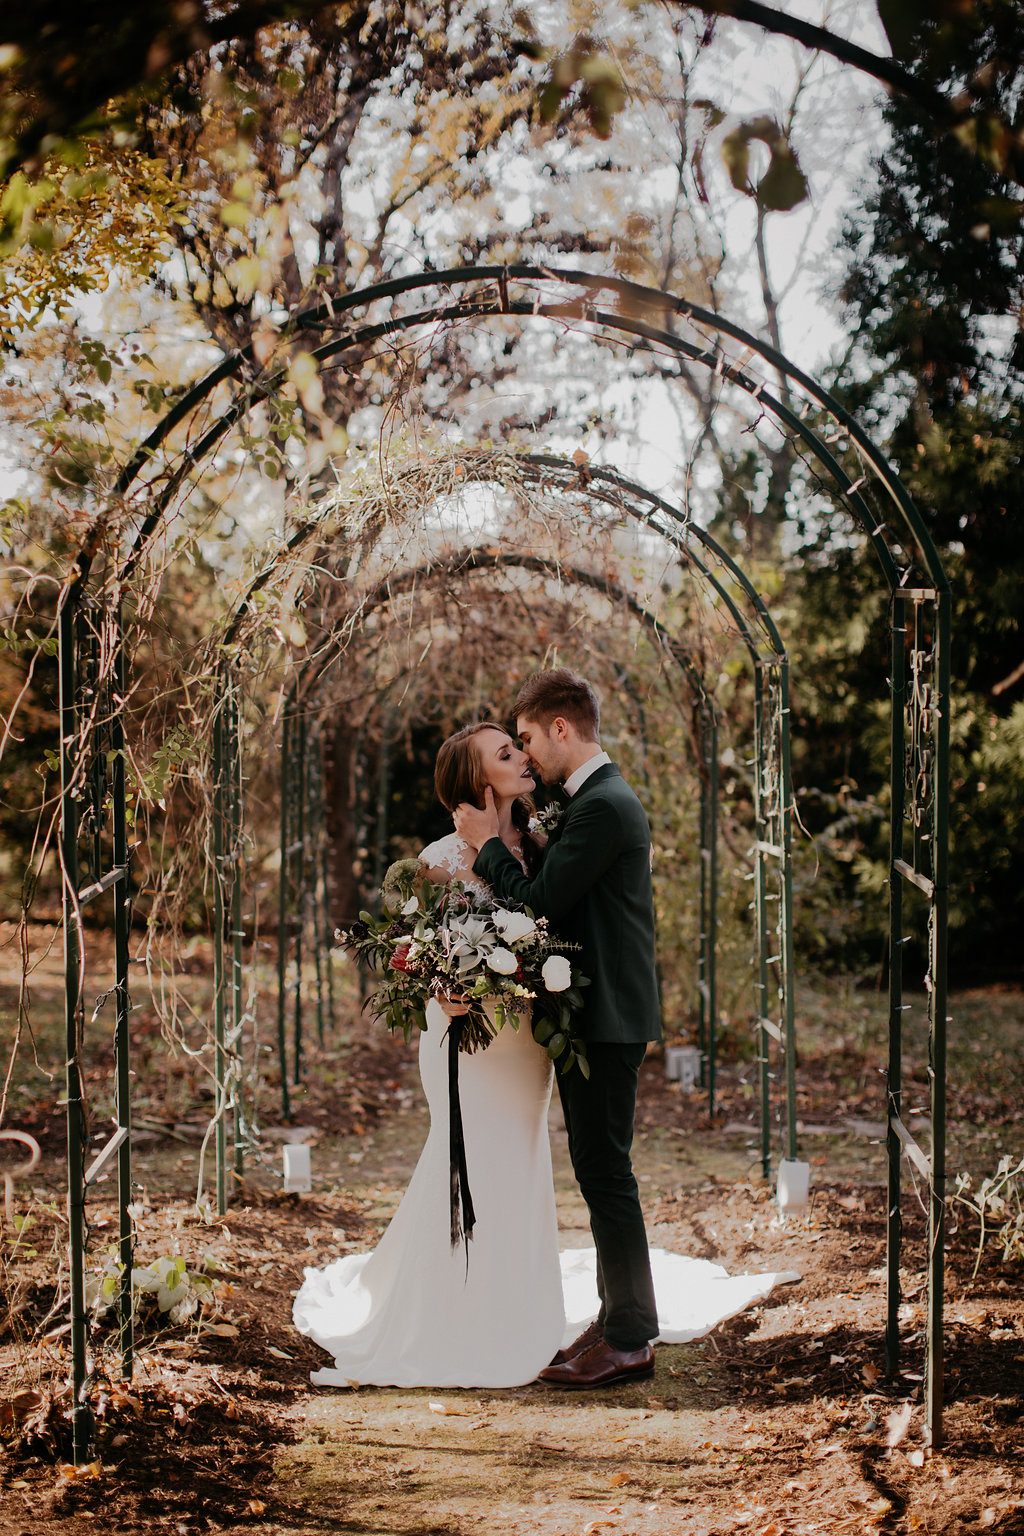 Riverwood Mansion Winter Wedding Inspiration // Nashville Floral Design